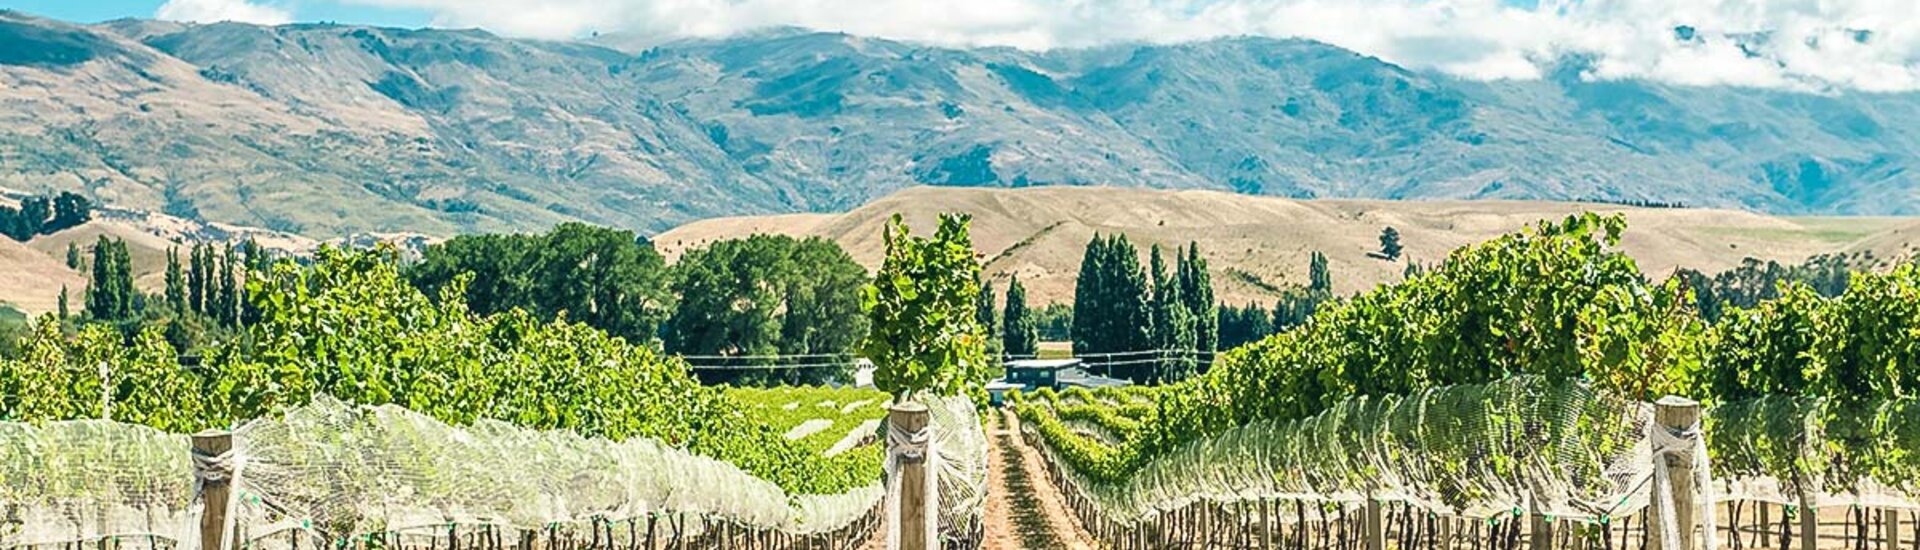 Weingüter von Otago in Neuseeland